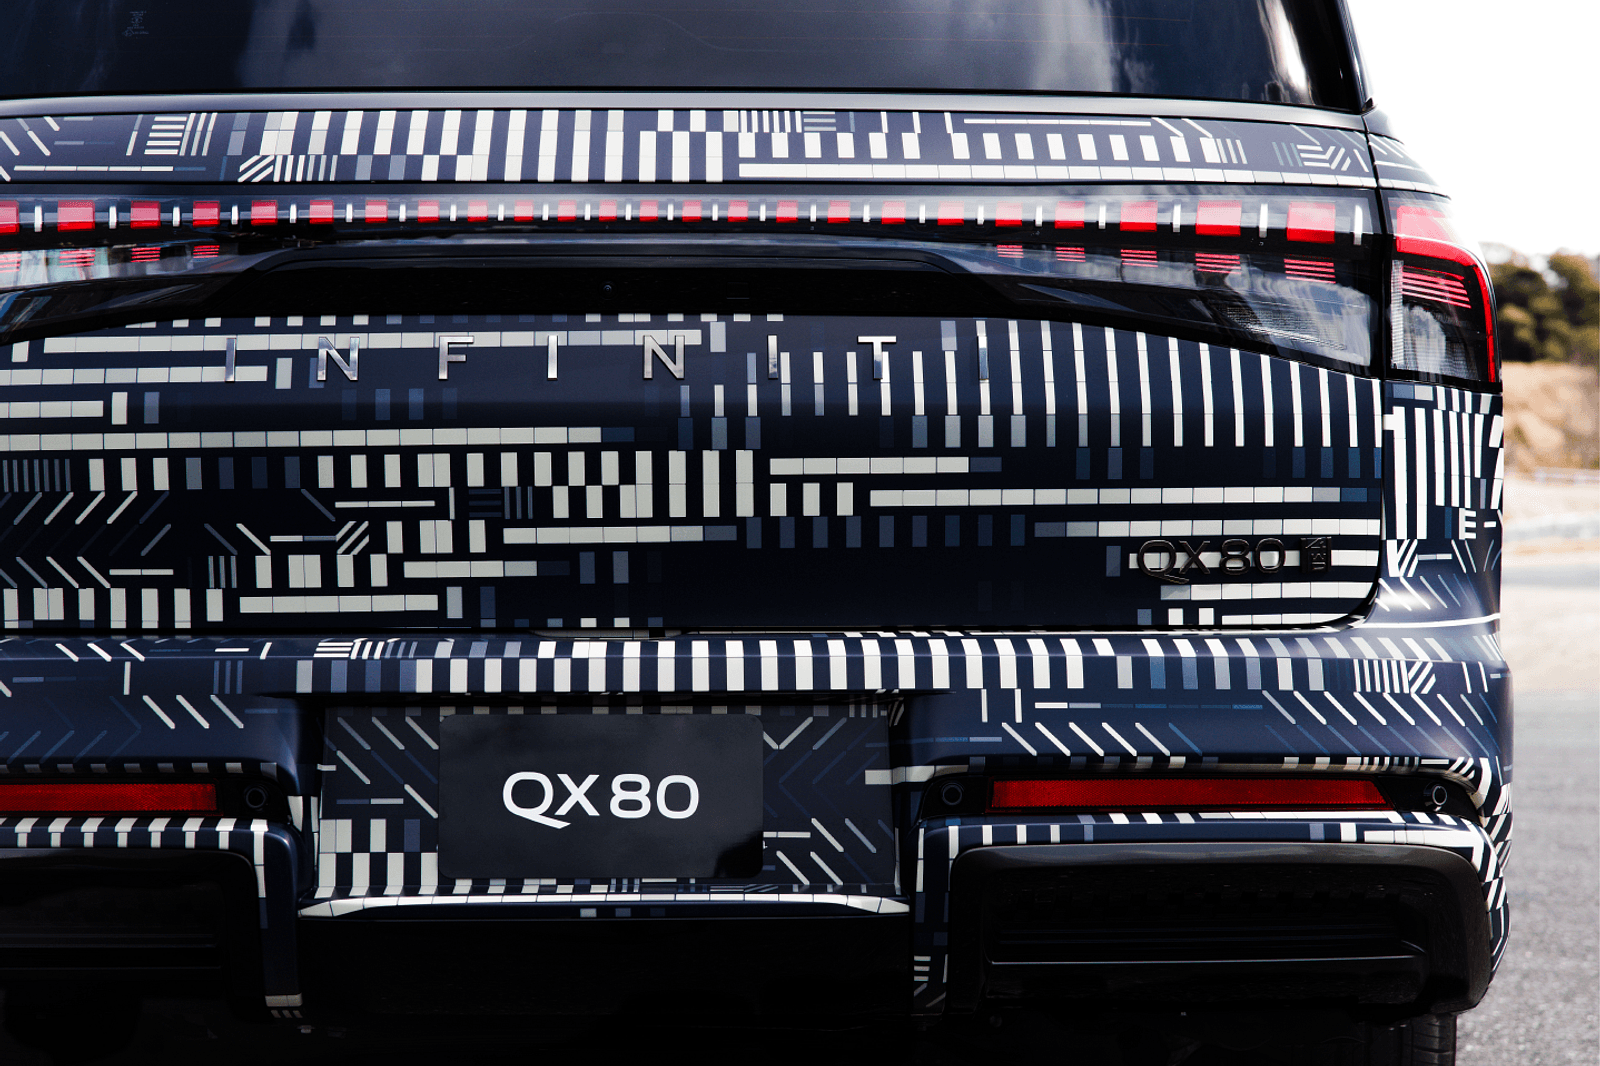 2025 英菲尼迪 QX80 配备全新日产 GT-R-豁天游|活田酉 一个专门分享有趣的信息，激发人们的求知欲。